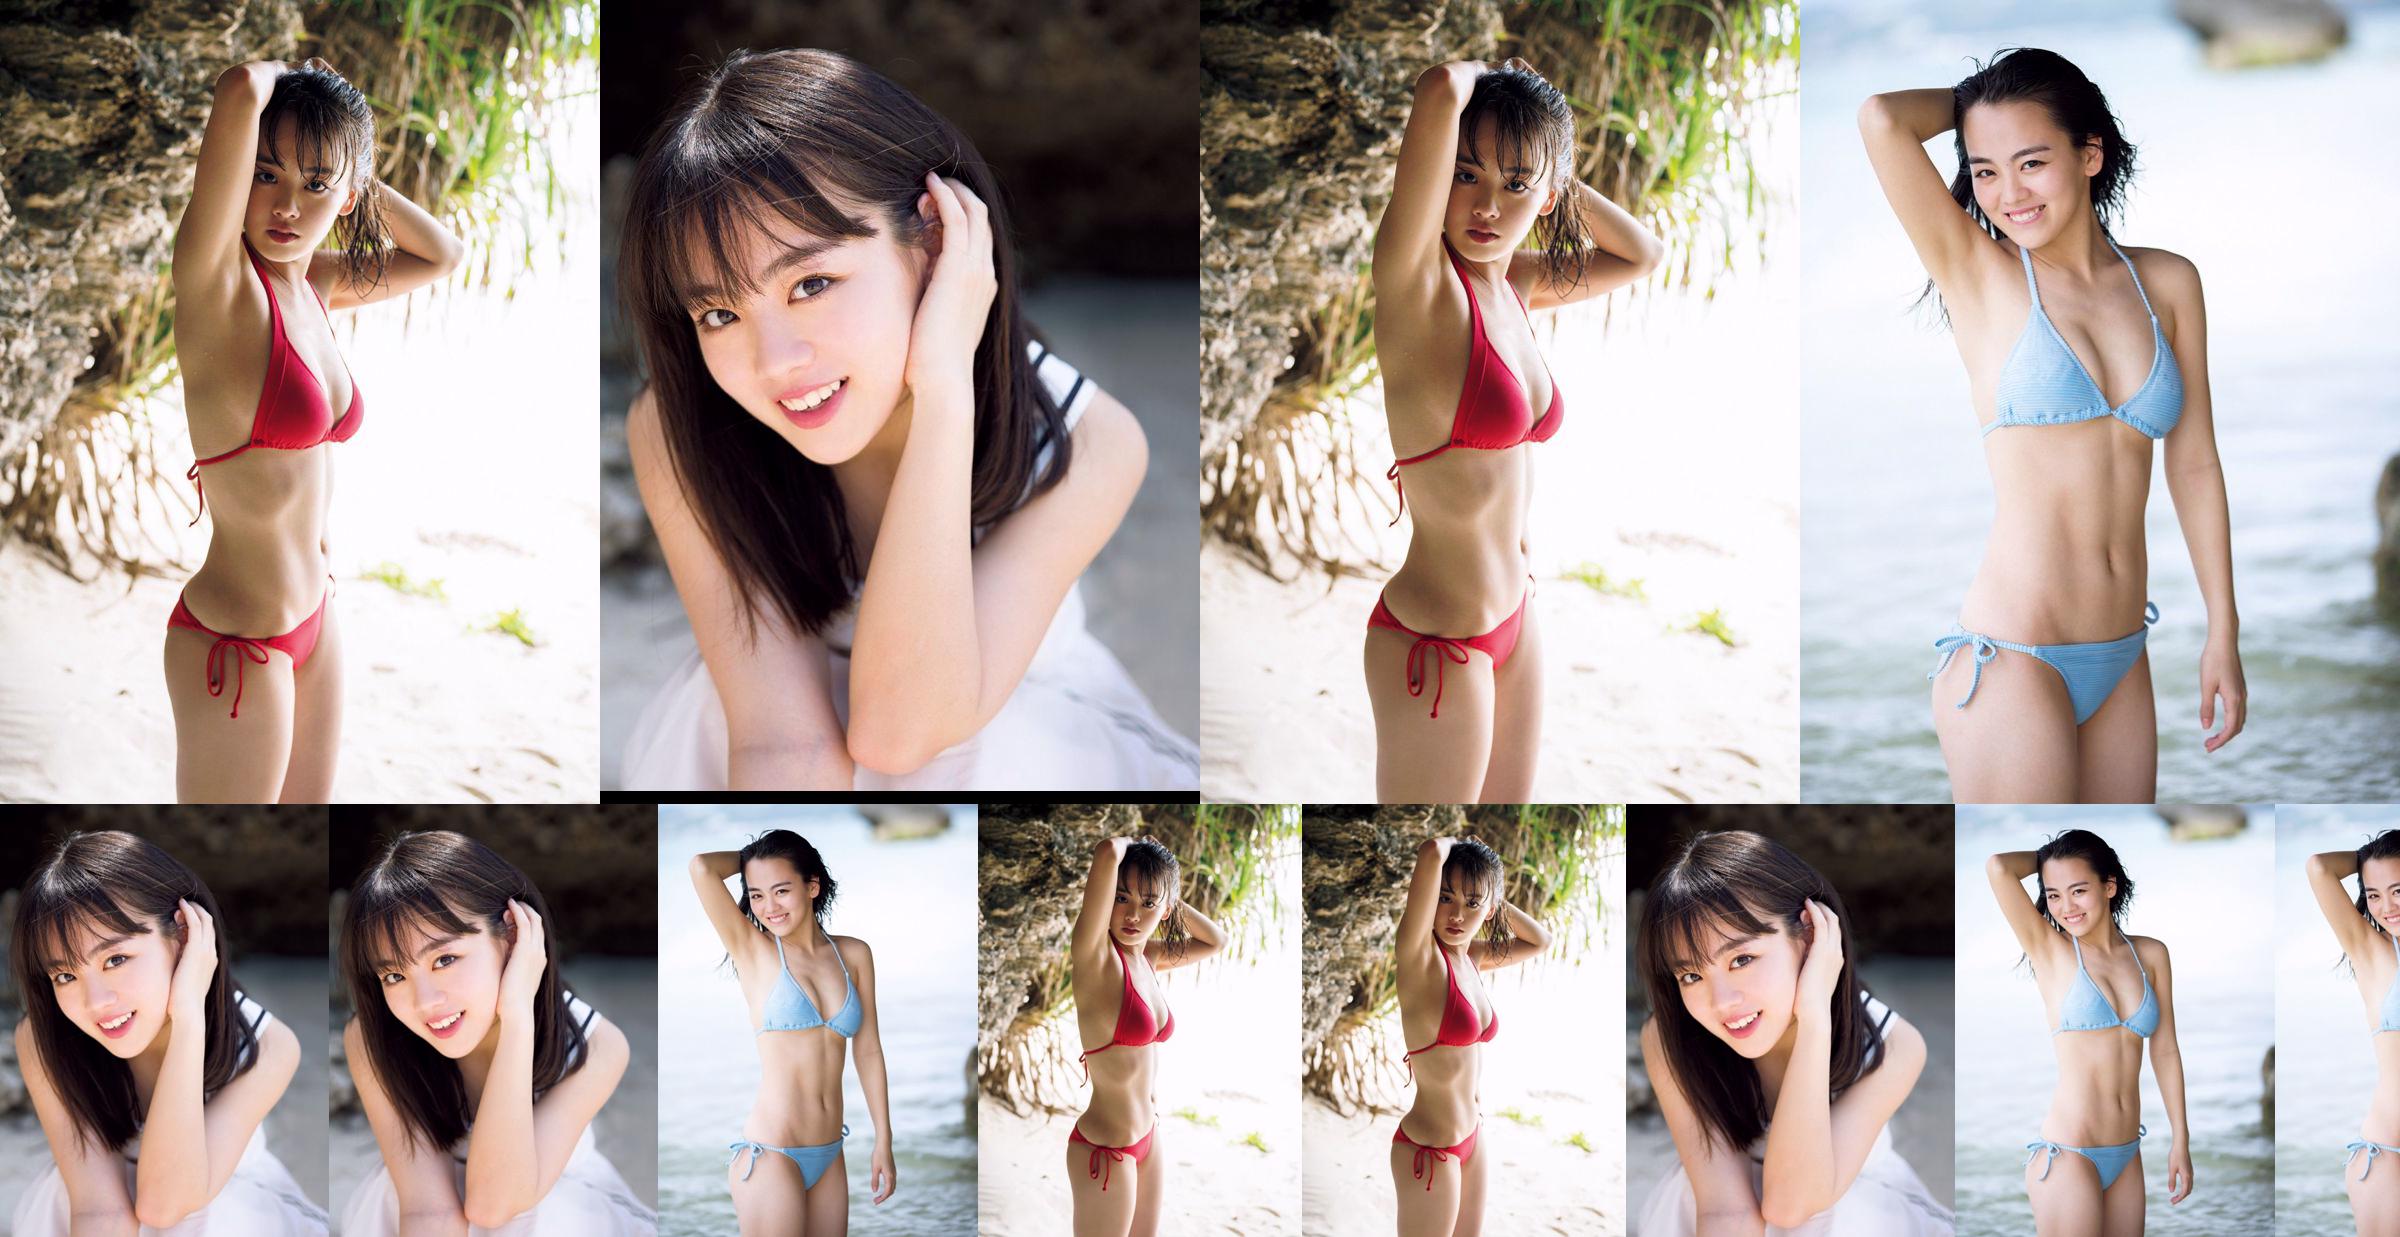 [THỨ SÁU] Rikka Ihara << Cựu đội trưởng câu lạc bộ khiêu vũ trường trung học Tomioka ra mắt trong bộ bikini >> Ảnh No.3f012d Trang 1